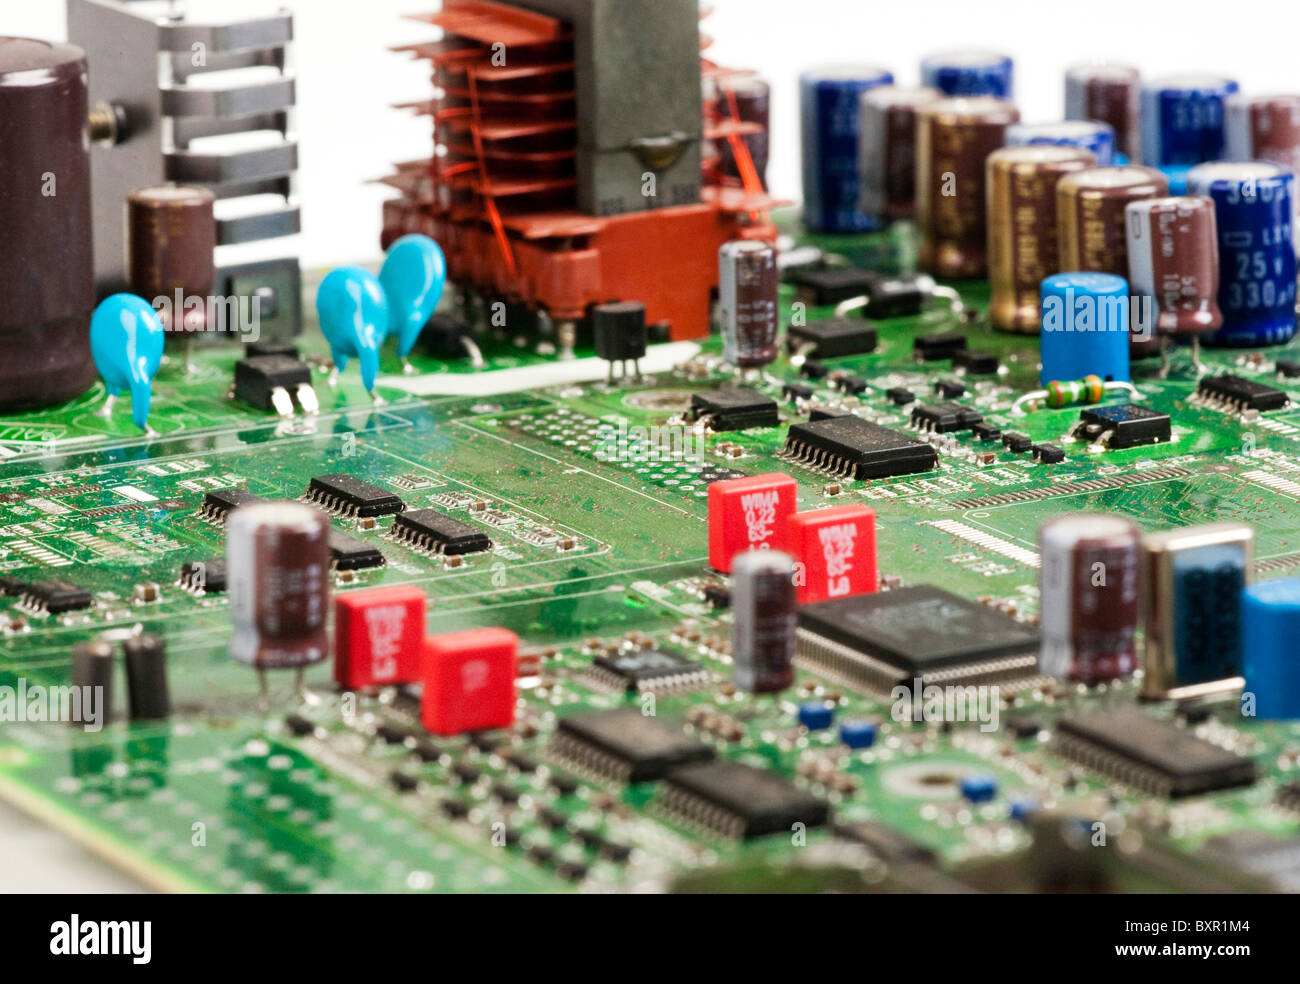 Placa de circuito impreso que muestra distintos componentes electrónicos Foto de stock